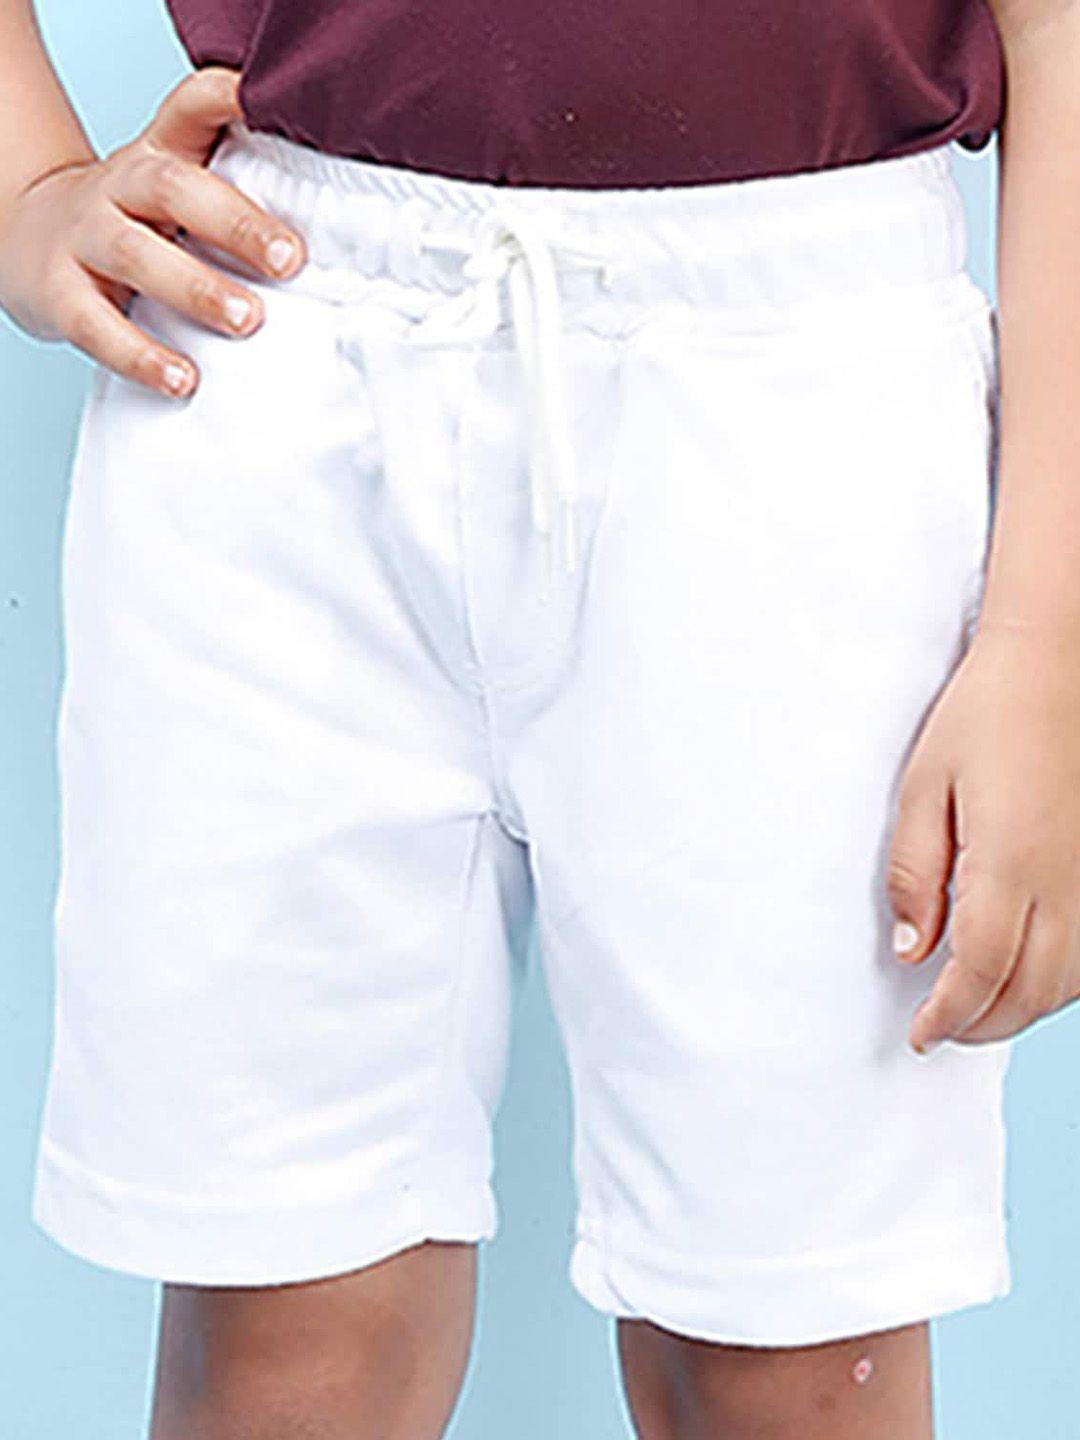 nusyl-boys-mid-rise-regular-shorts